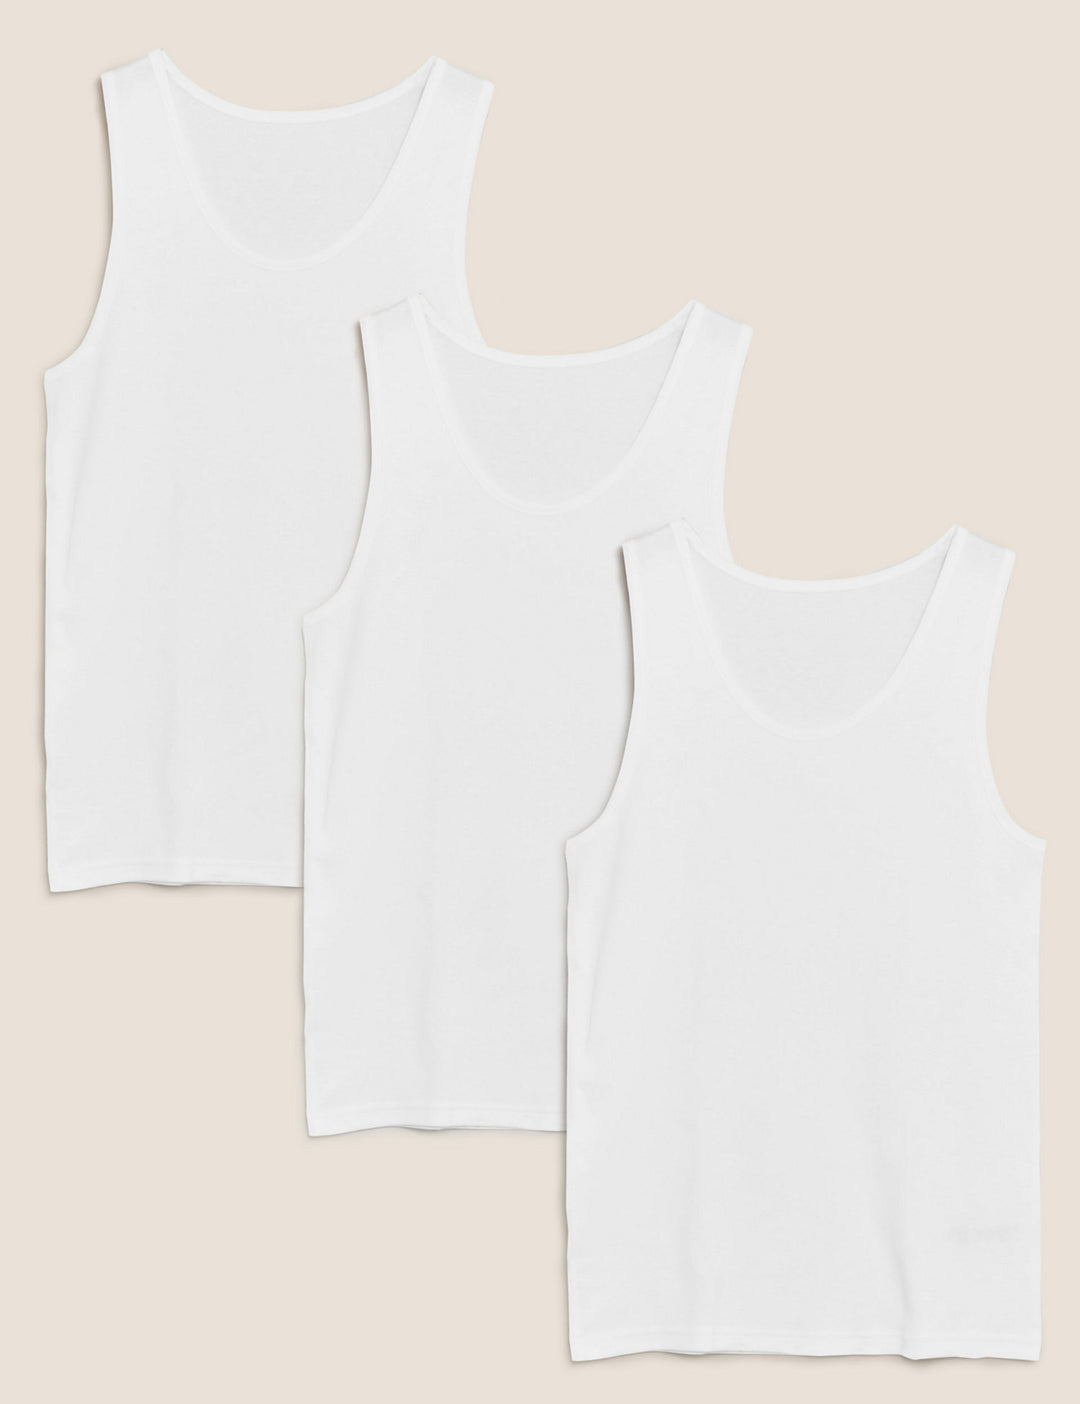 M&S Men Cool & Fresh 3-Pair Cotton Lycra S/L Vest White Color T14/4502S